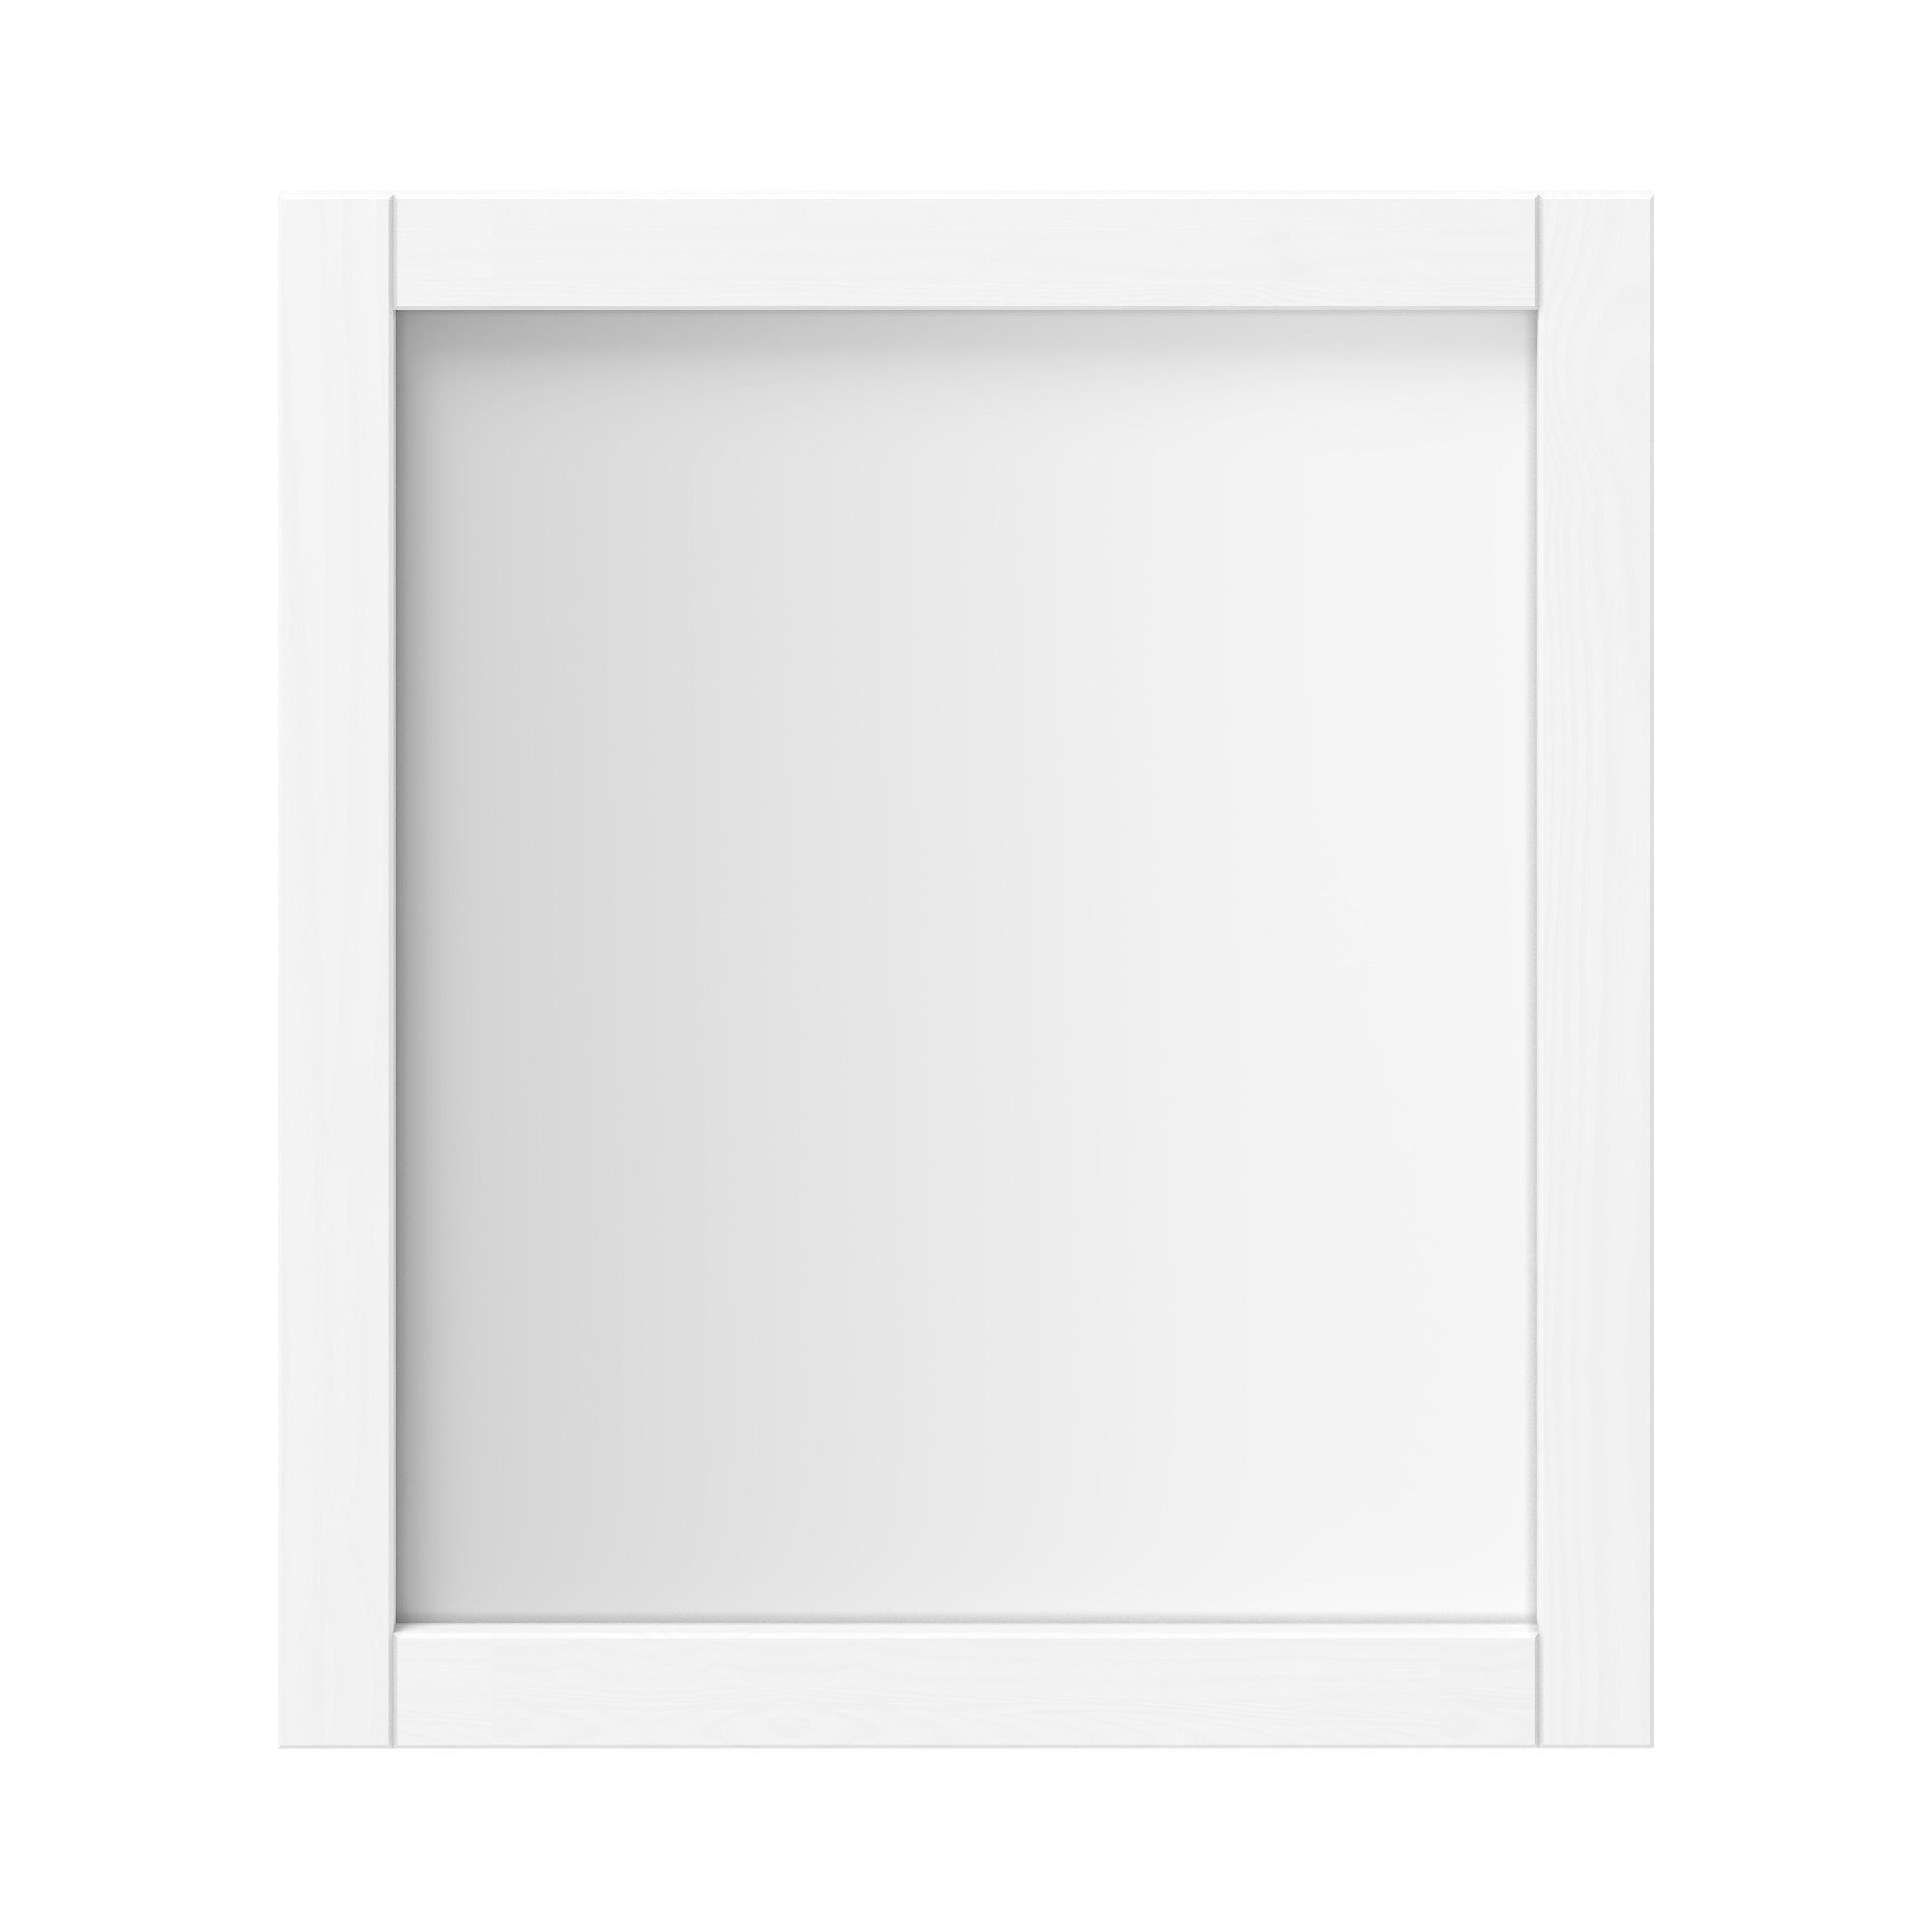 Woodroom Spiegel Valencia, Kiefer massiv lackiert, BxHxT 62x70x3 cm